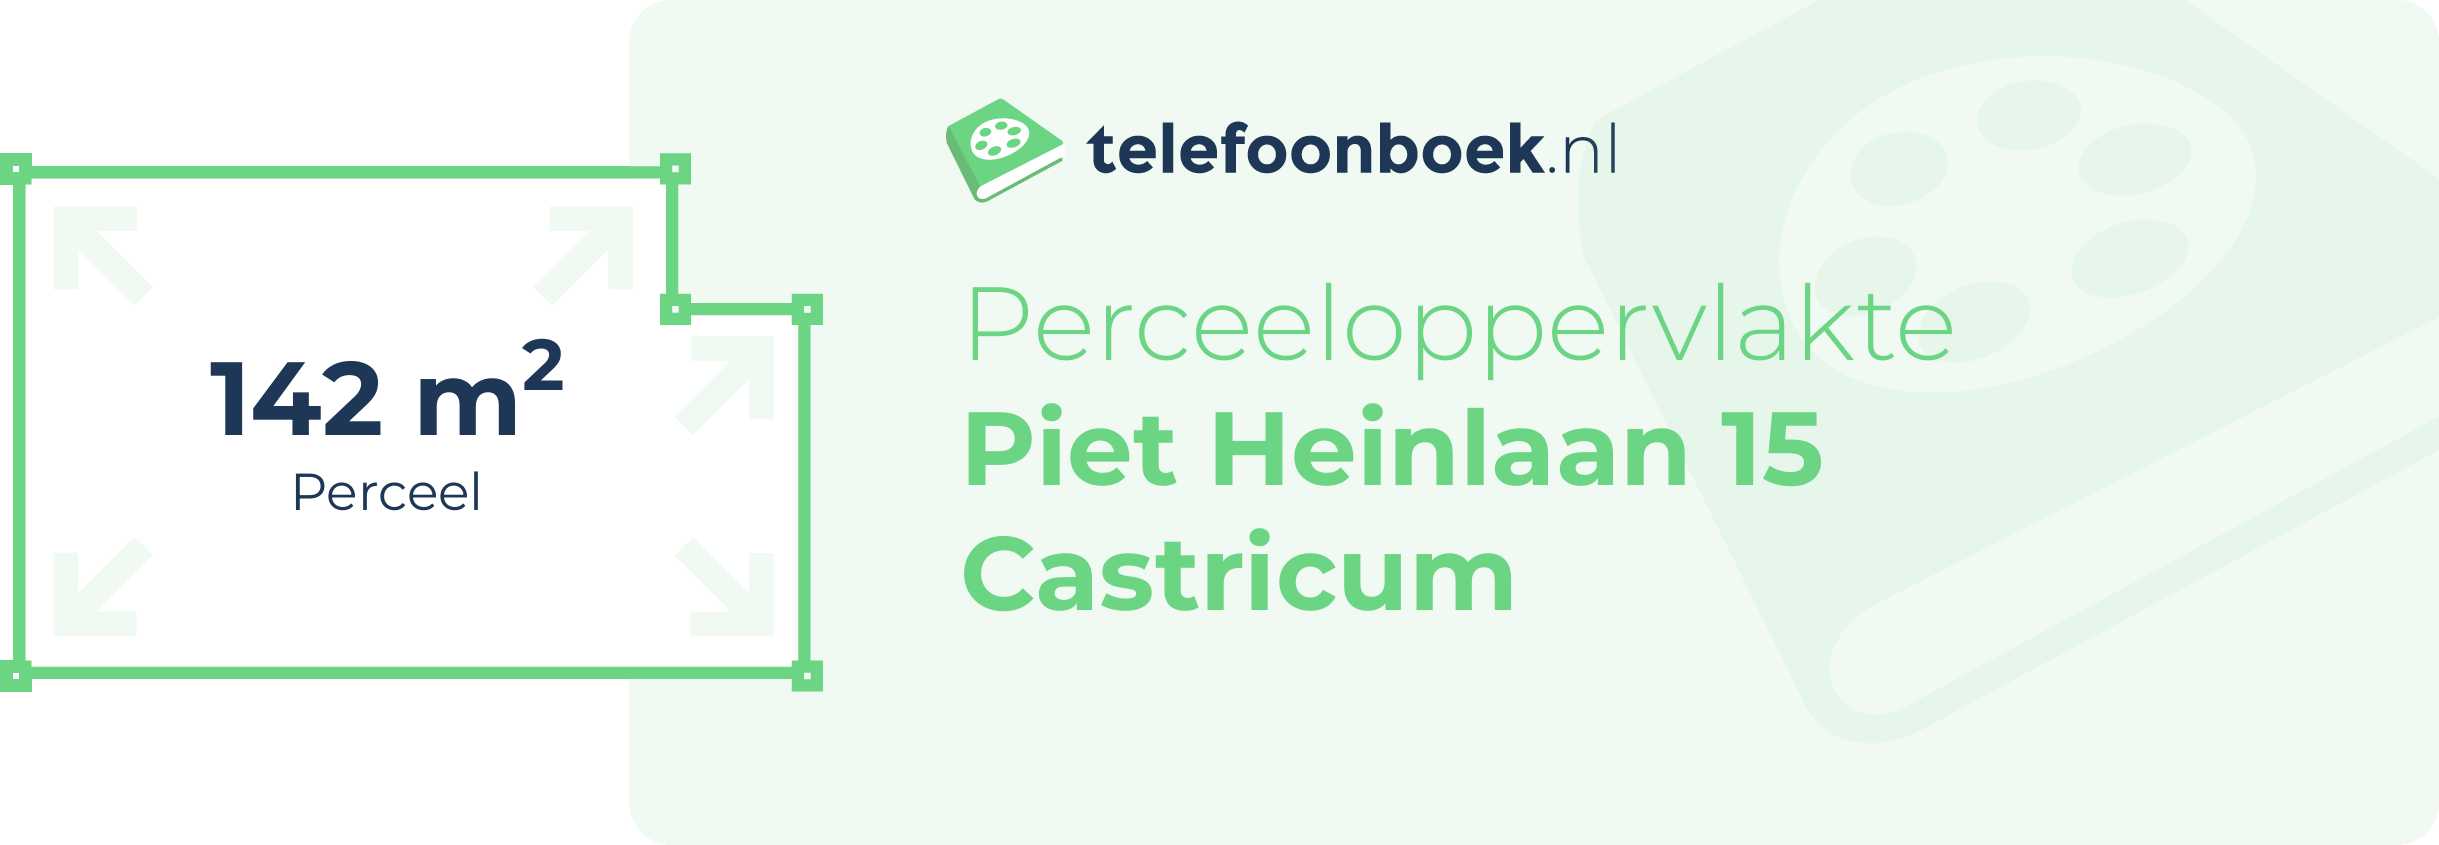 Perceeloppervlakte Piet Heinlaan 15 Castricum